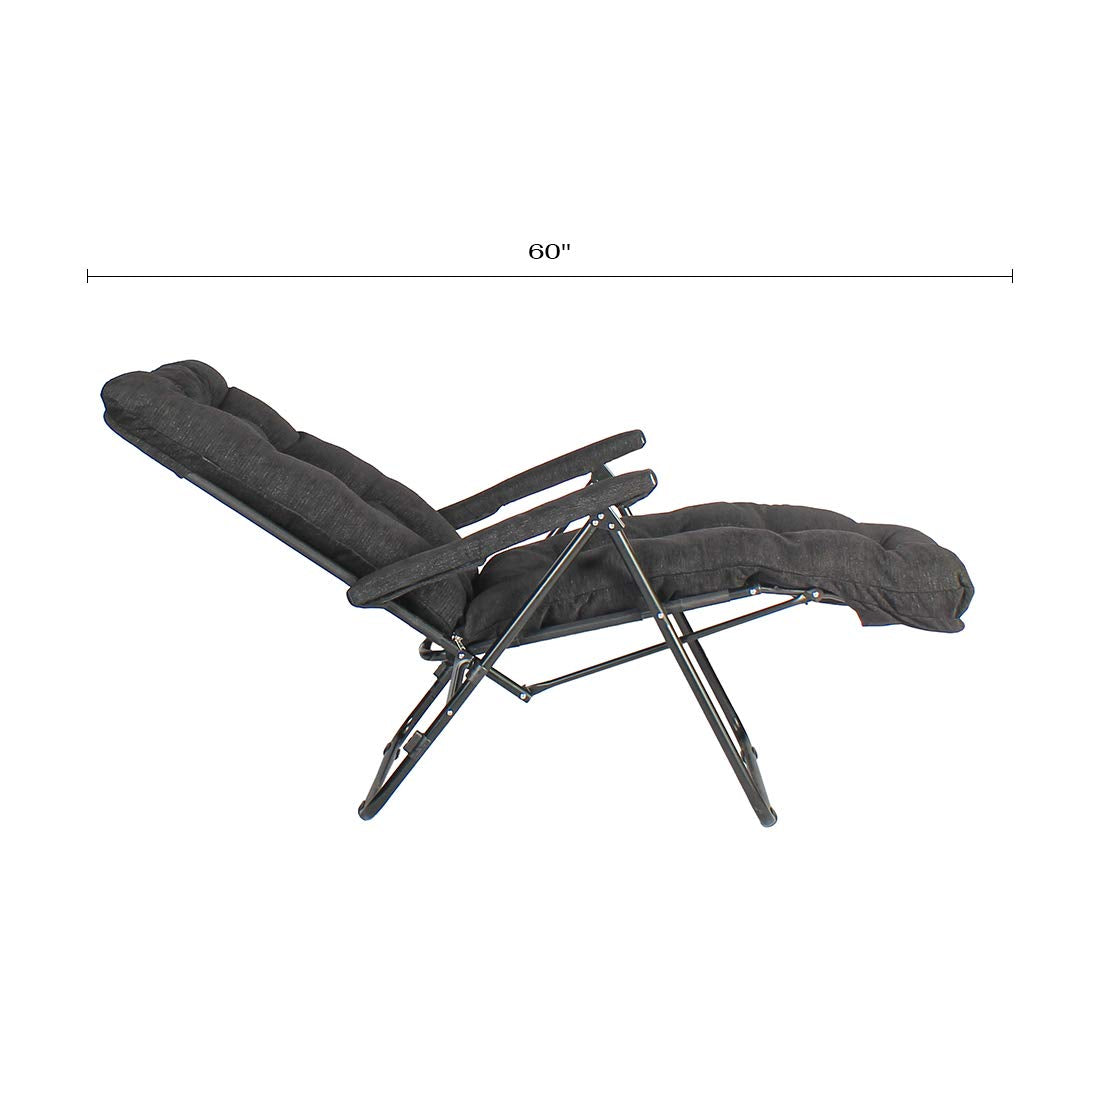 Furlay Foldable Recliner Chair Recron Cushion